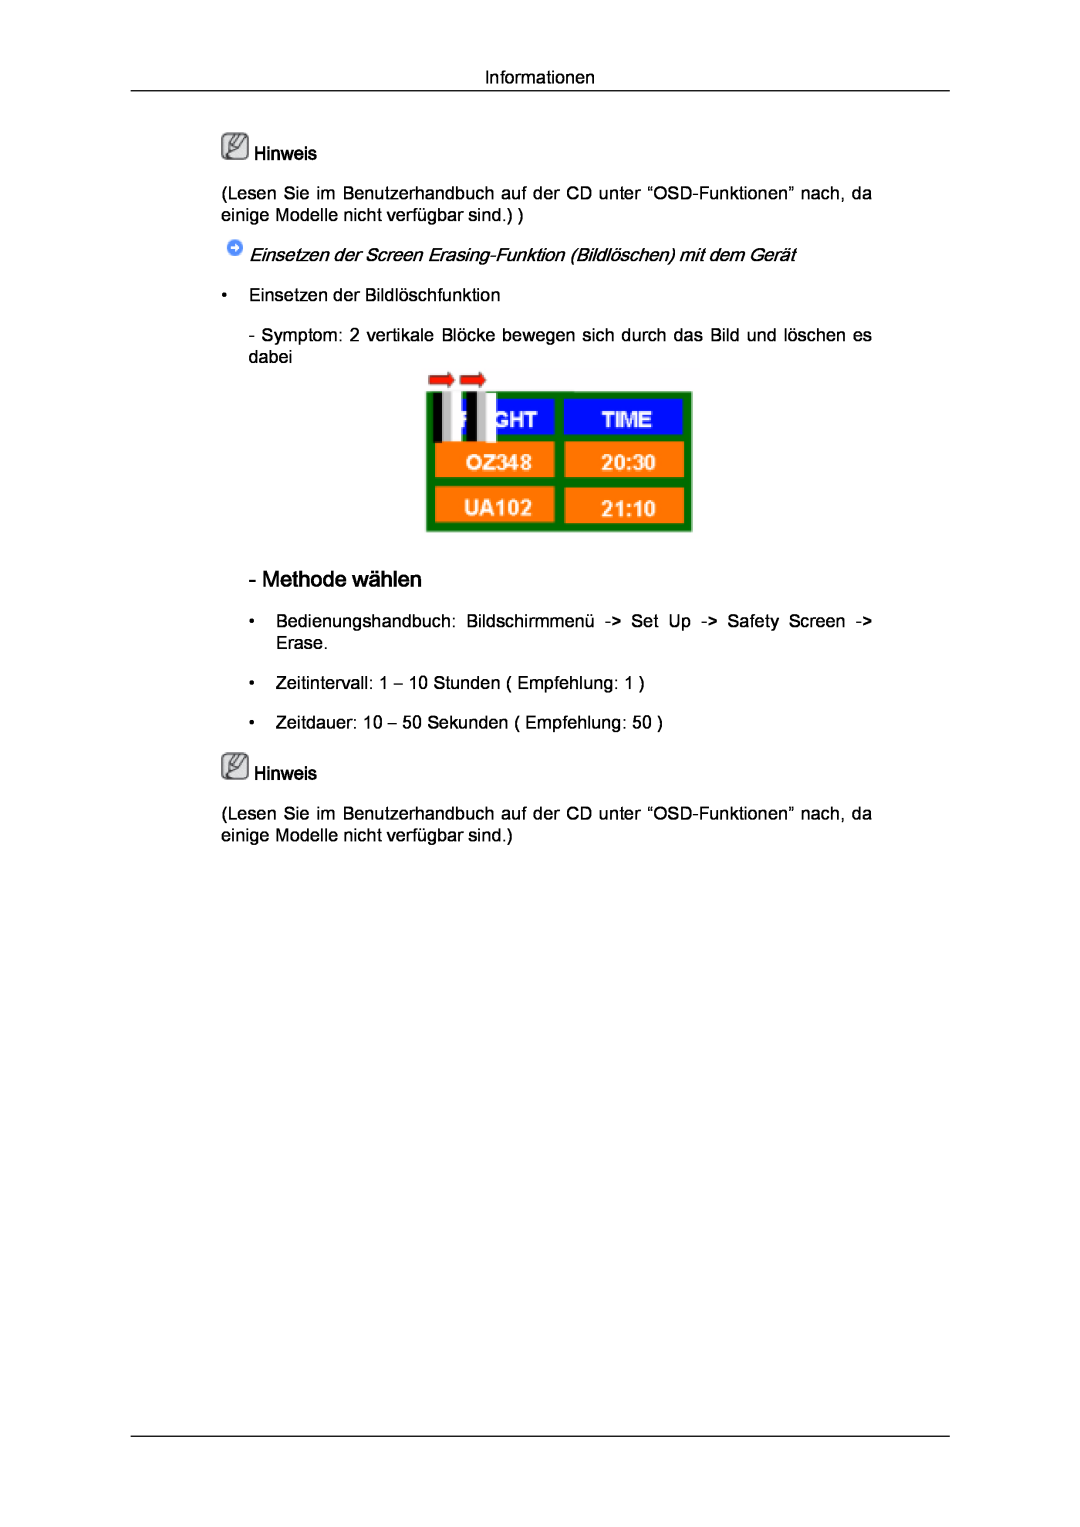 Samsung LH32MGQLBC/EN manual Methode wählen, Hinweis, Einsetzen der Screen Erasing-Funktion Bildlöschen mit dem Gerät 